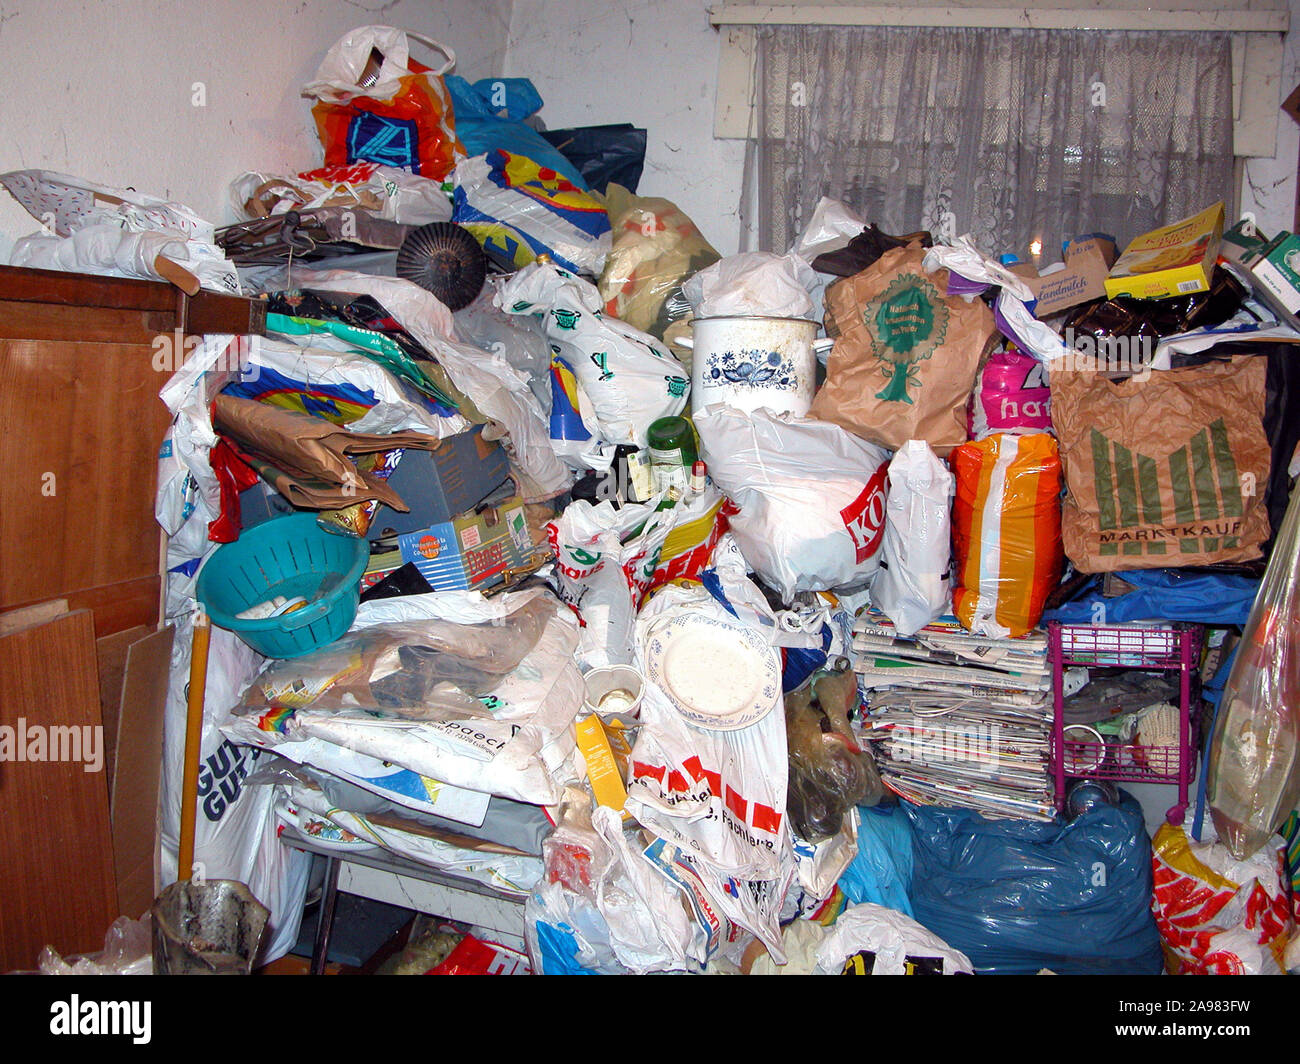 Messie, Unordentlicher Haushalt, Müll, vollgemüllte Wohnung, Messie-Syndrom, Foto Stock